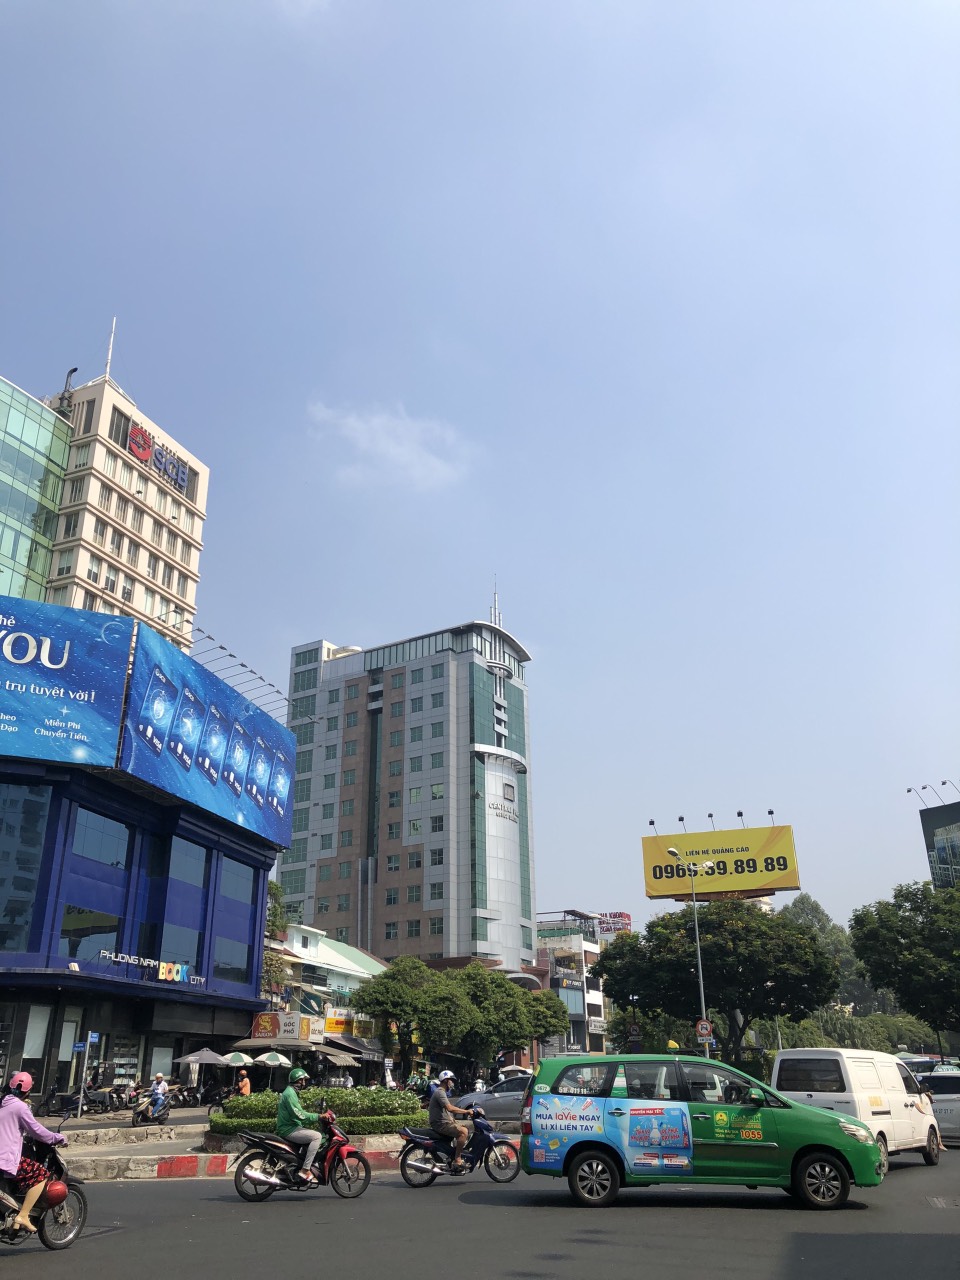 Bán nhà mặt tiền số 66 Mạc Thị Bưởi cách Nguyễn Huệ đúng 40m, nhà 1 chủ sở hữu suốt! 4,5x20m